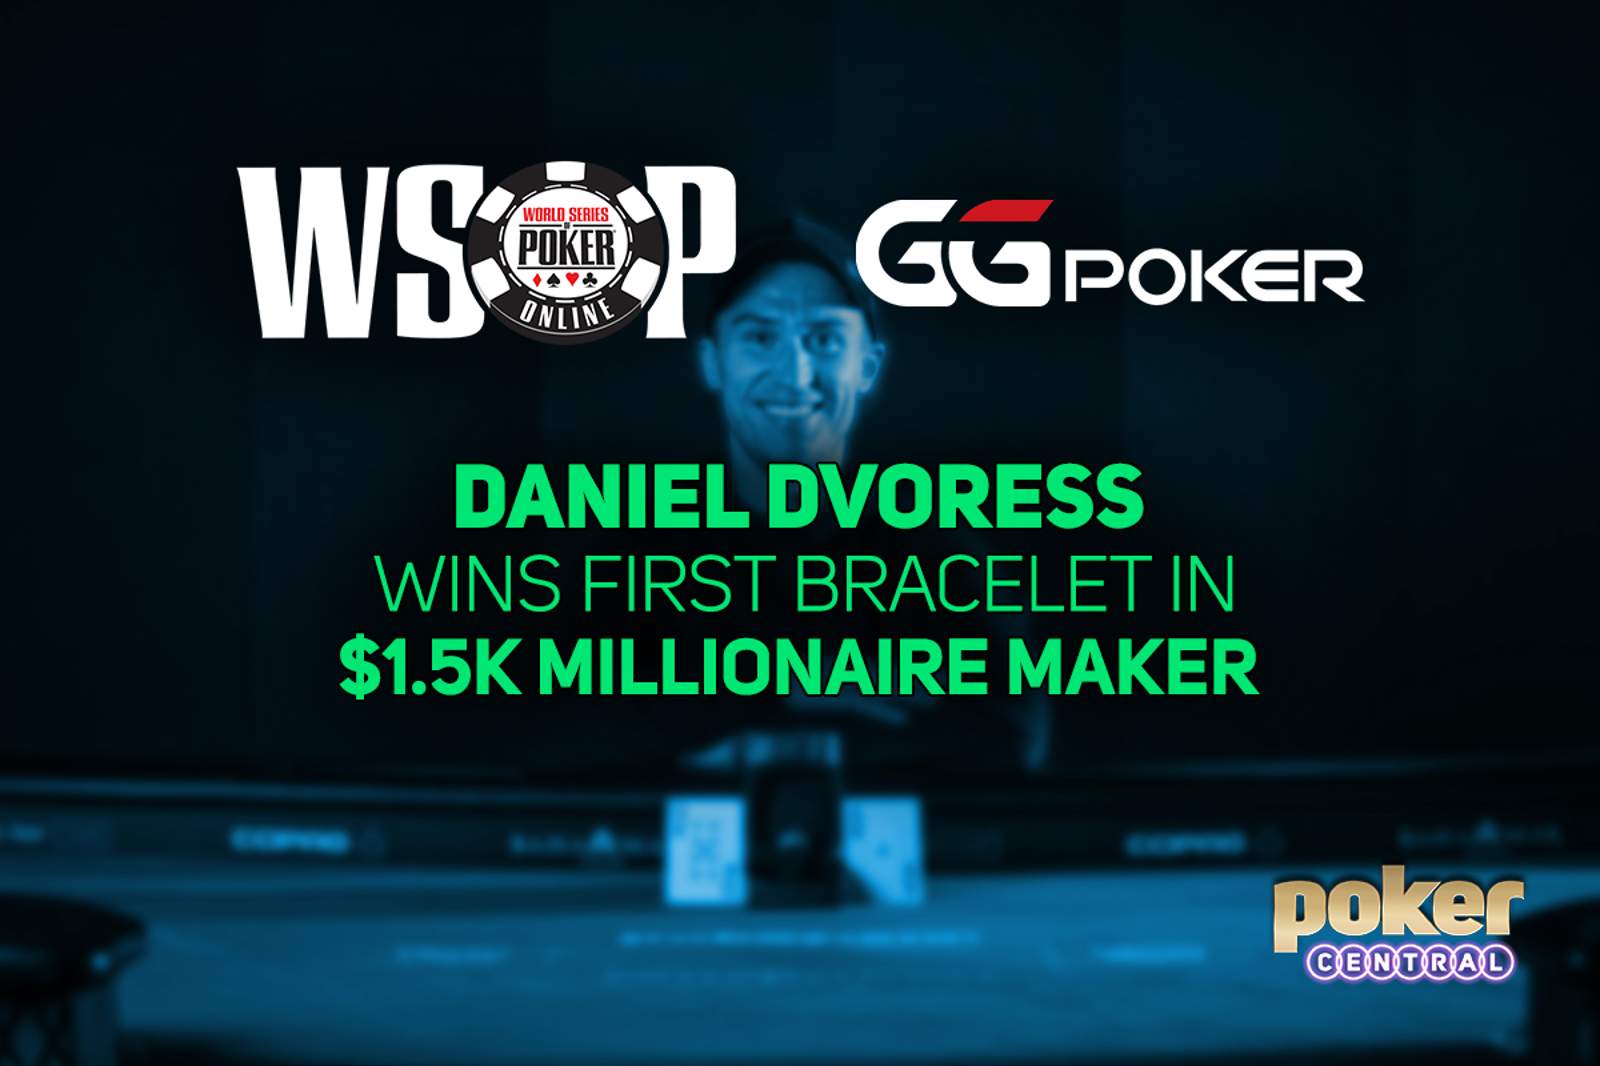 Daniel Dvoress Wins GGPoker WSOP Online $1,500 MILLIONAIRE MAKER for $1,489,289